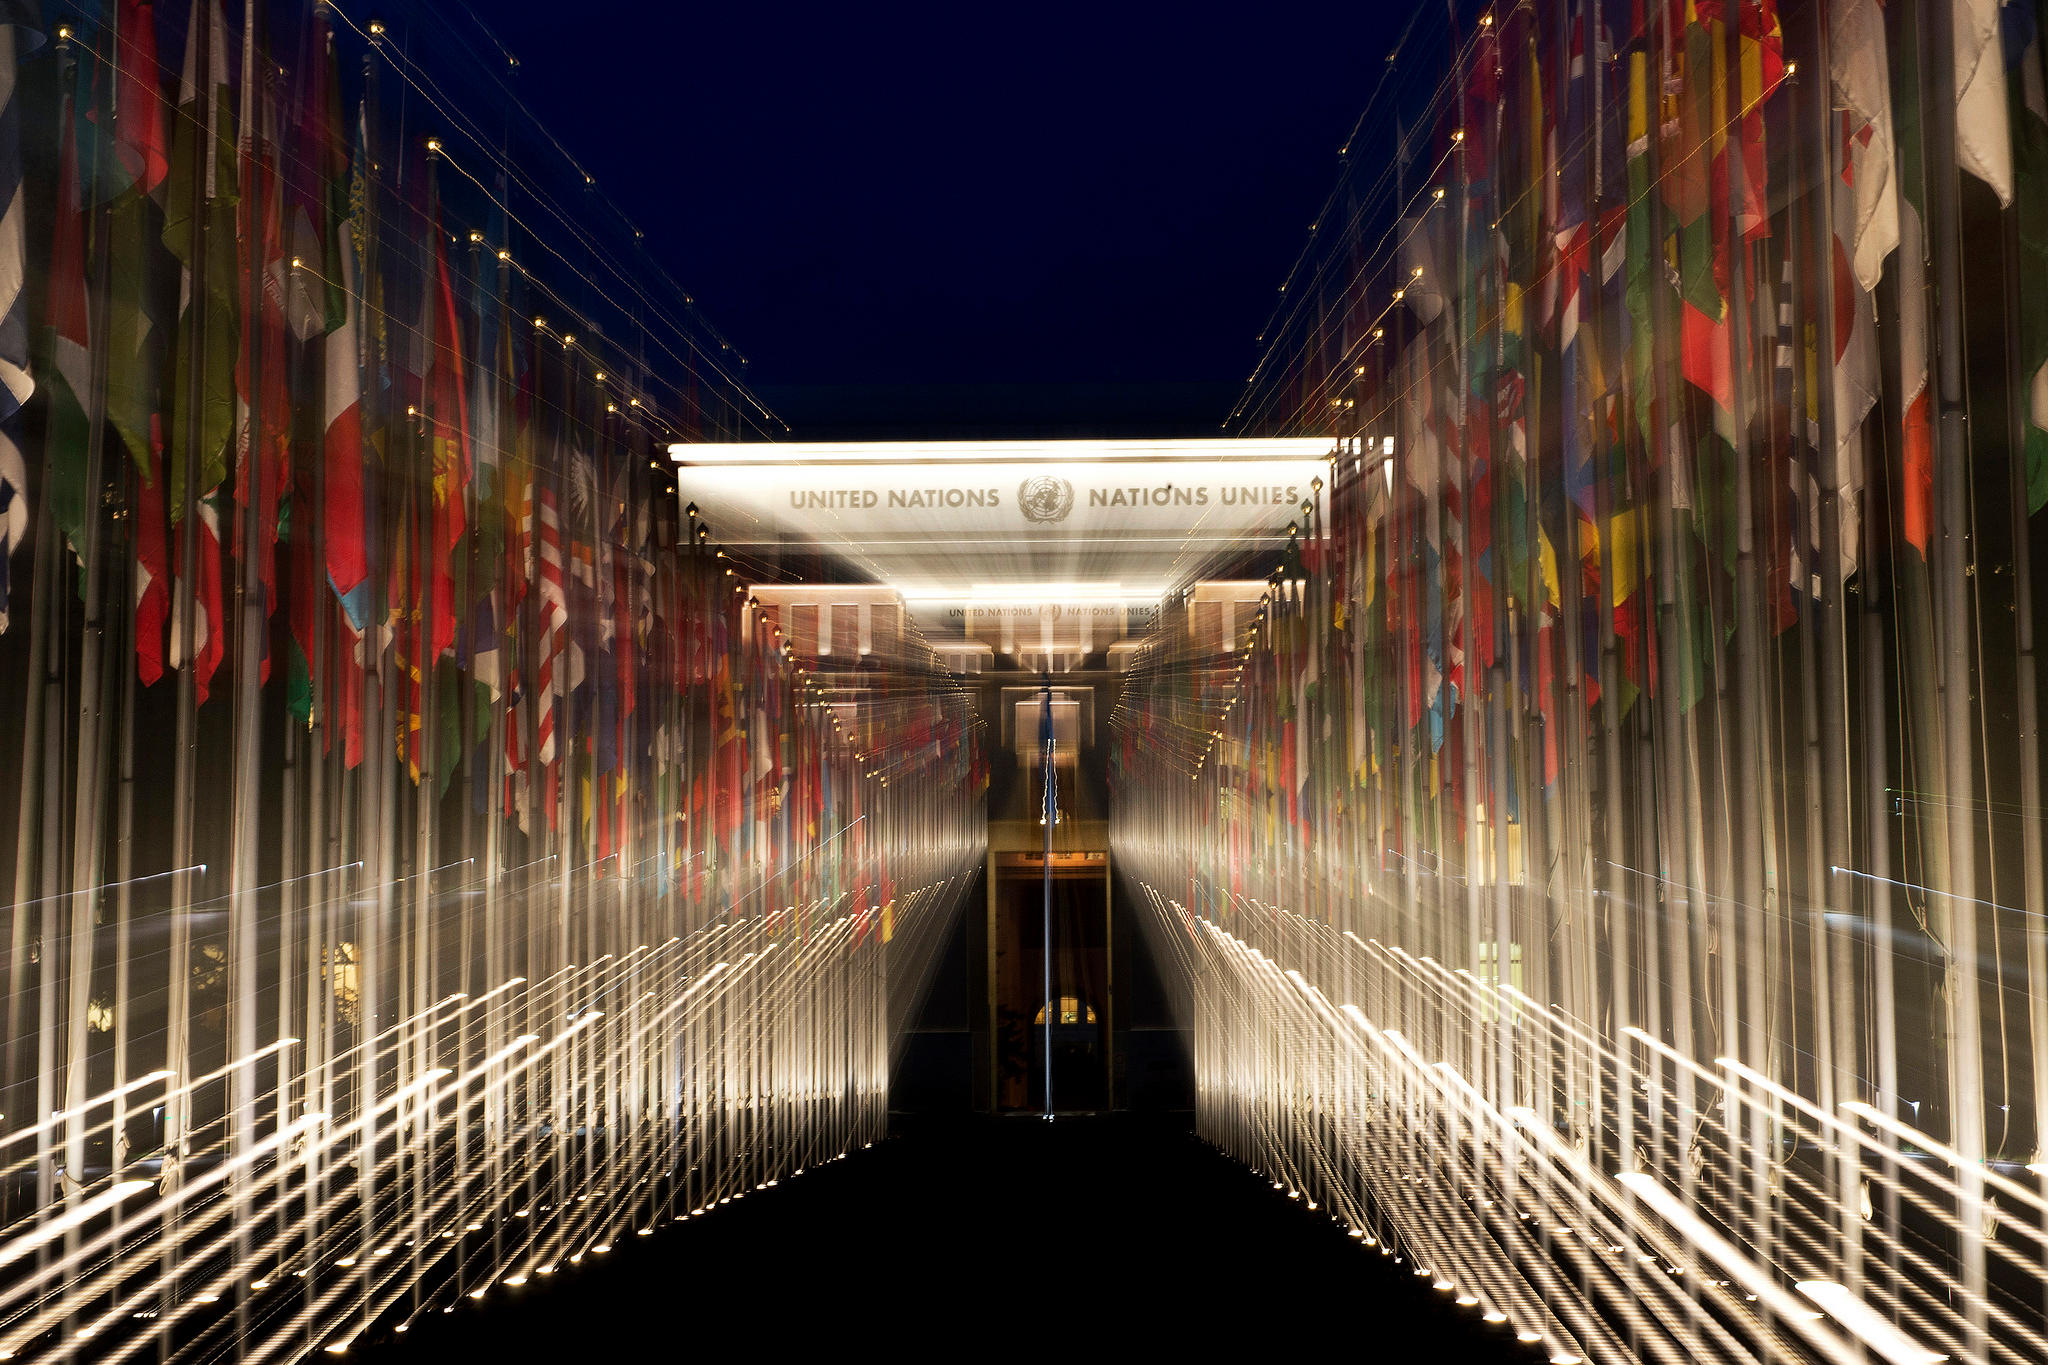 أعلام دول العالم على جانبي مدخل قصر الأمم في جنيف